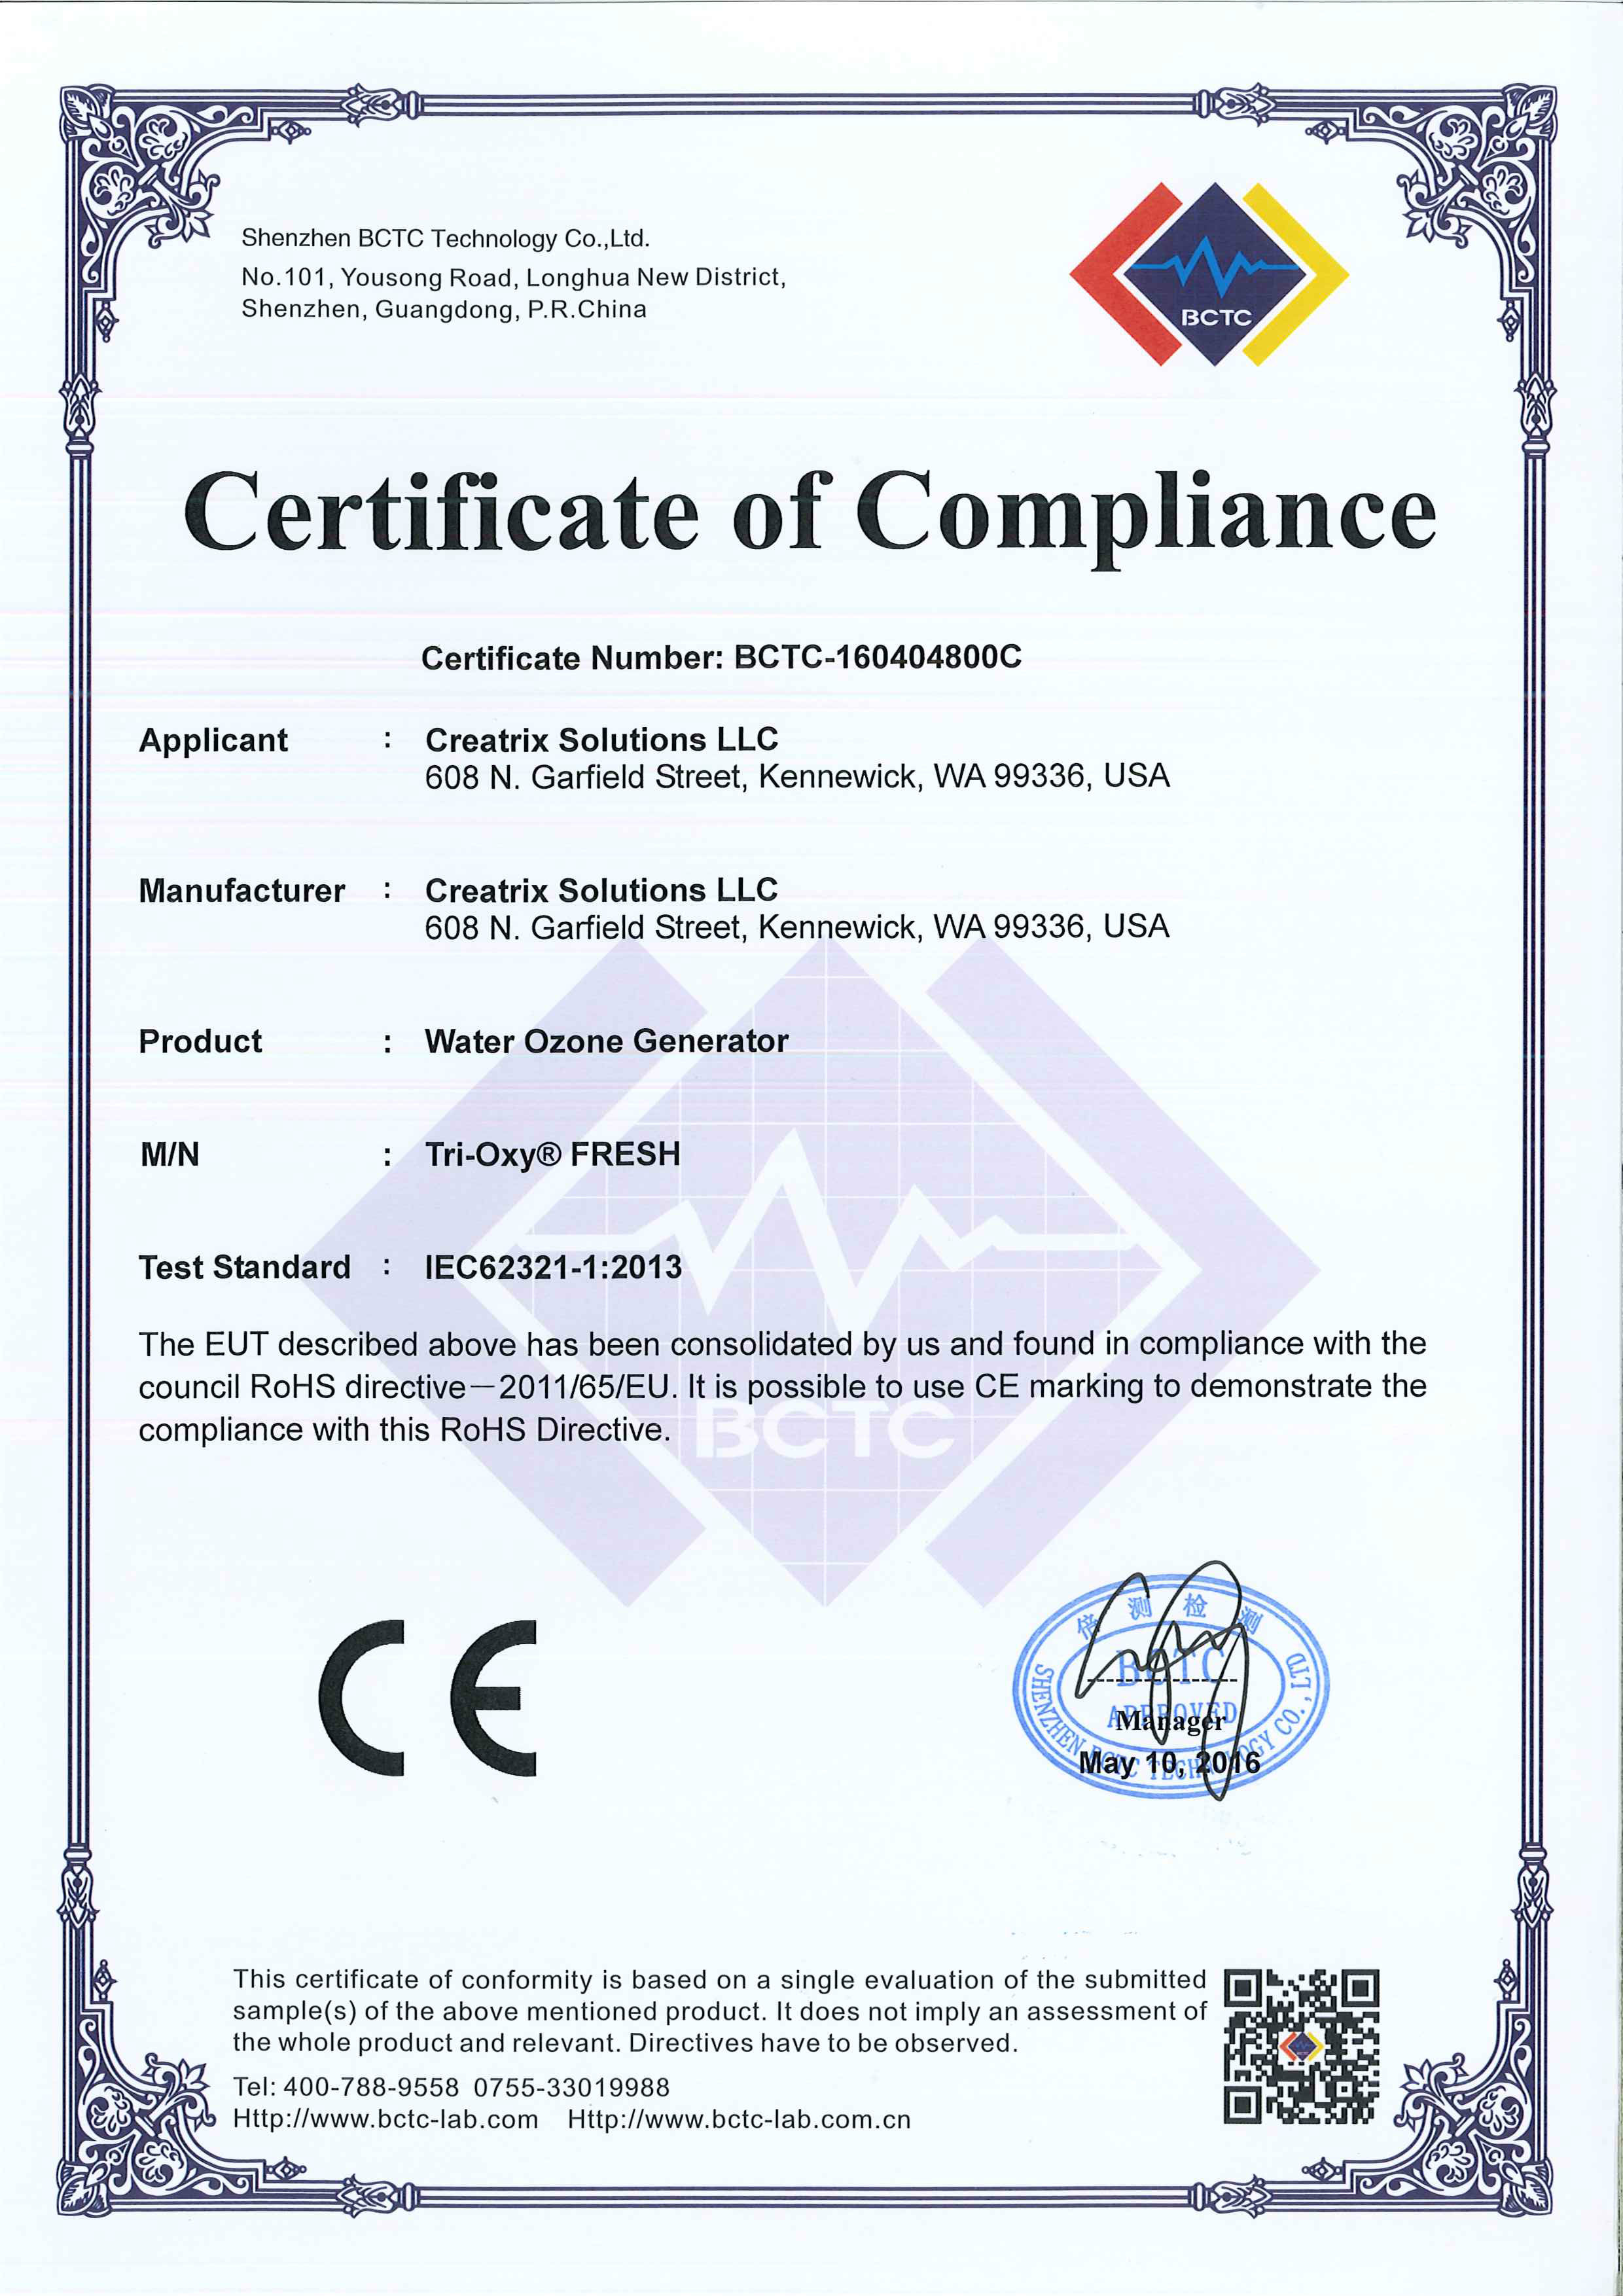 Tri-Oxy FRESH ROHS Certificate